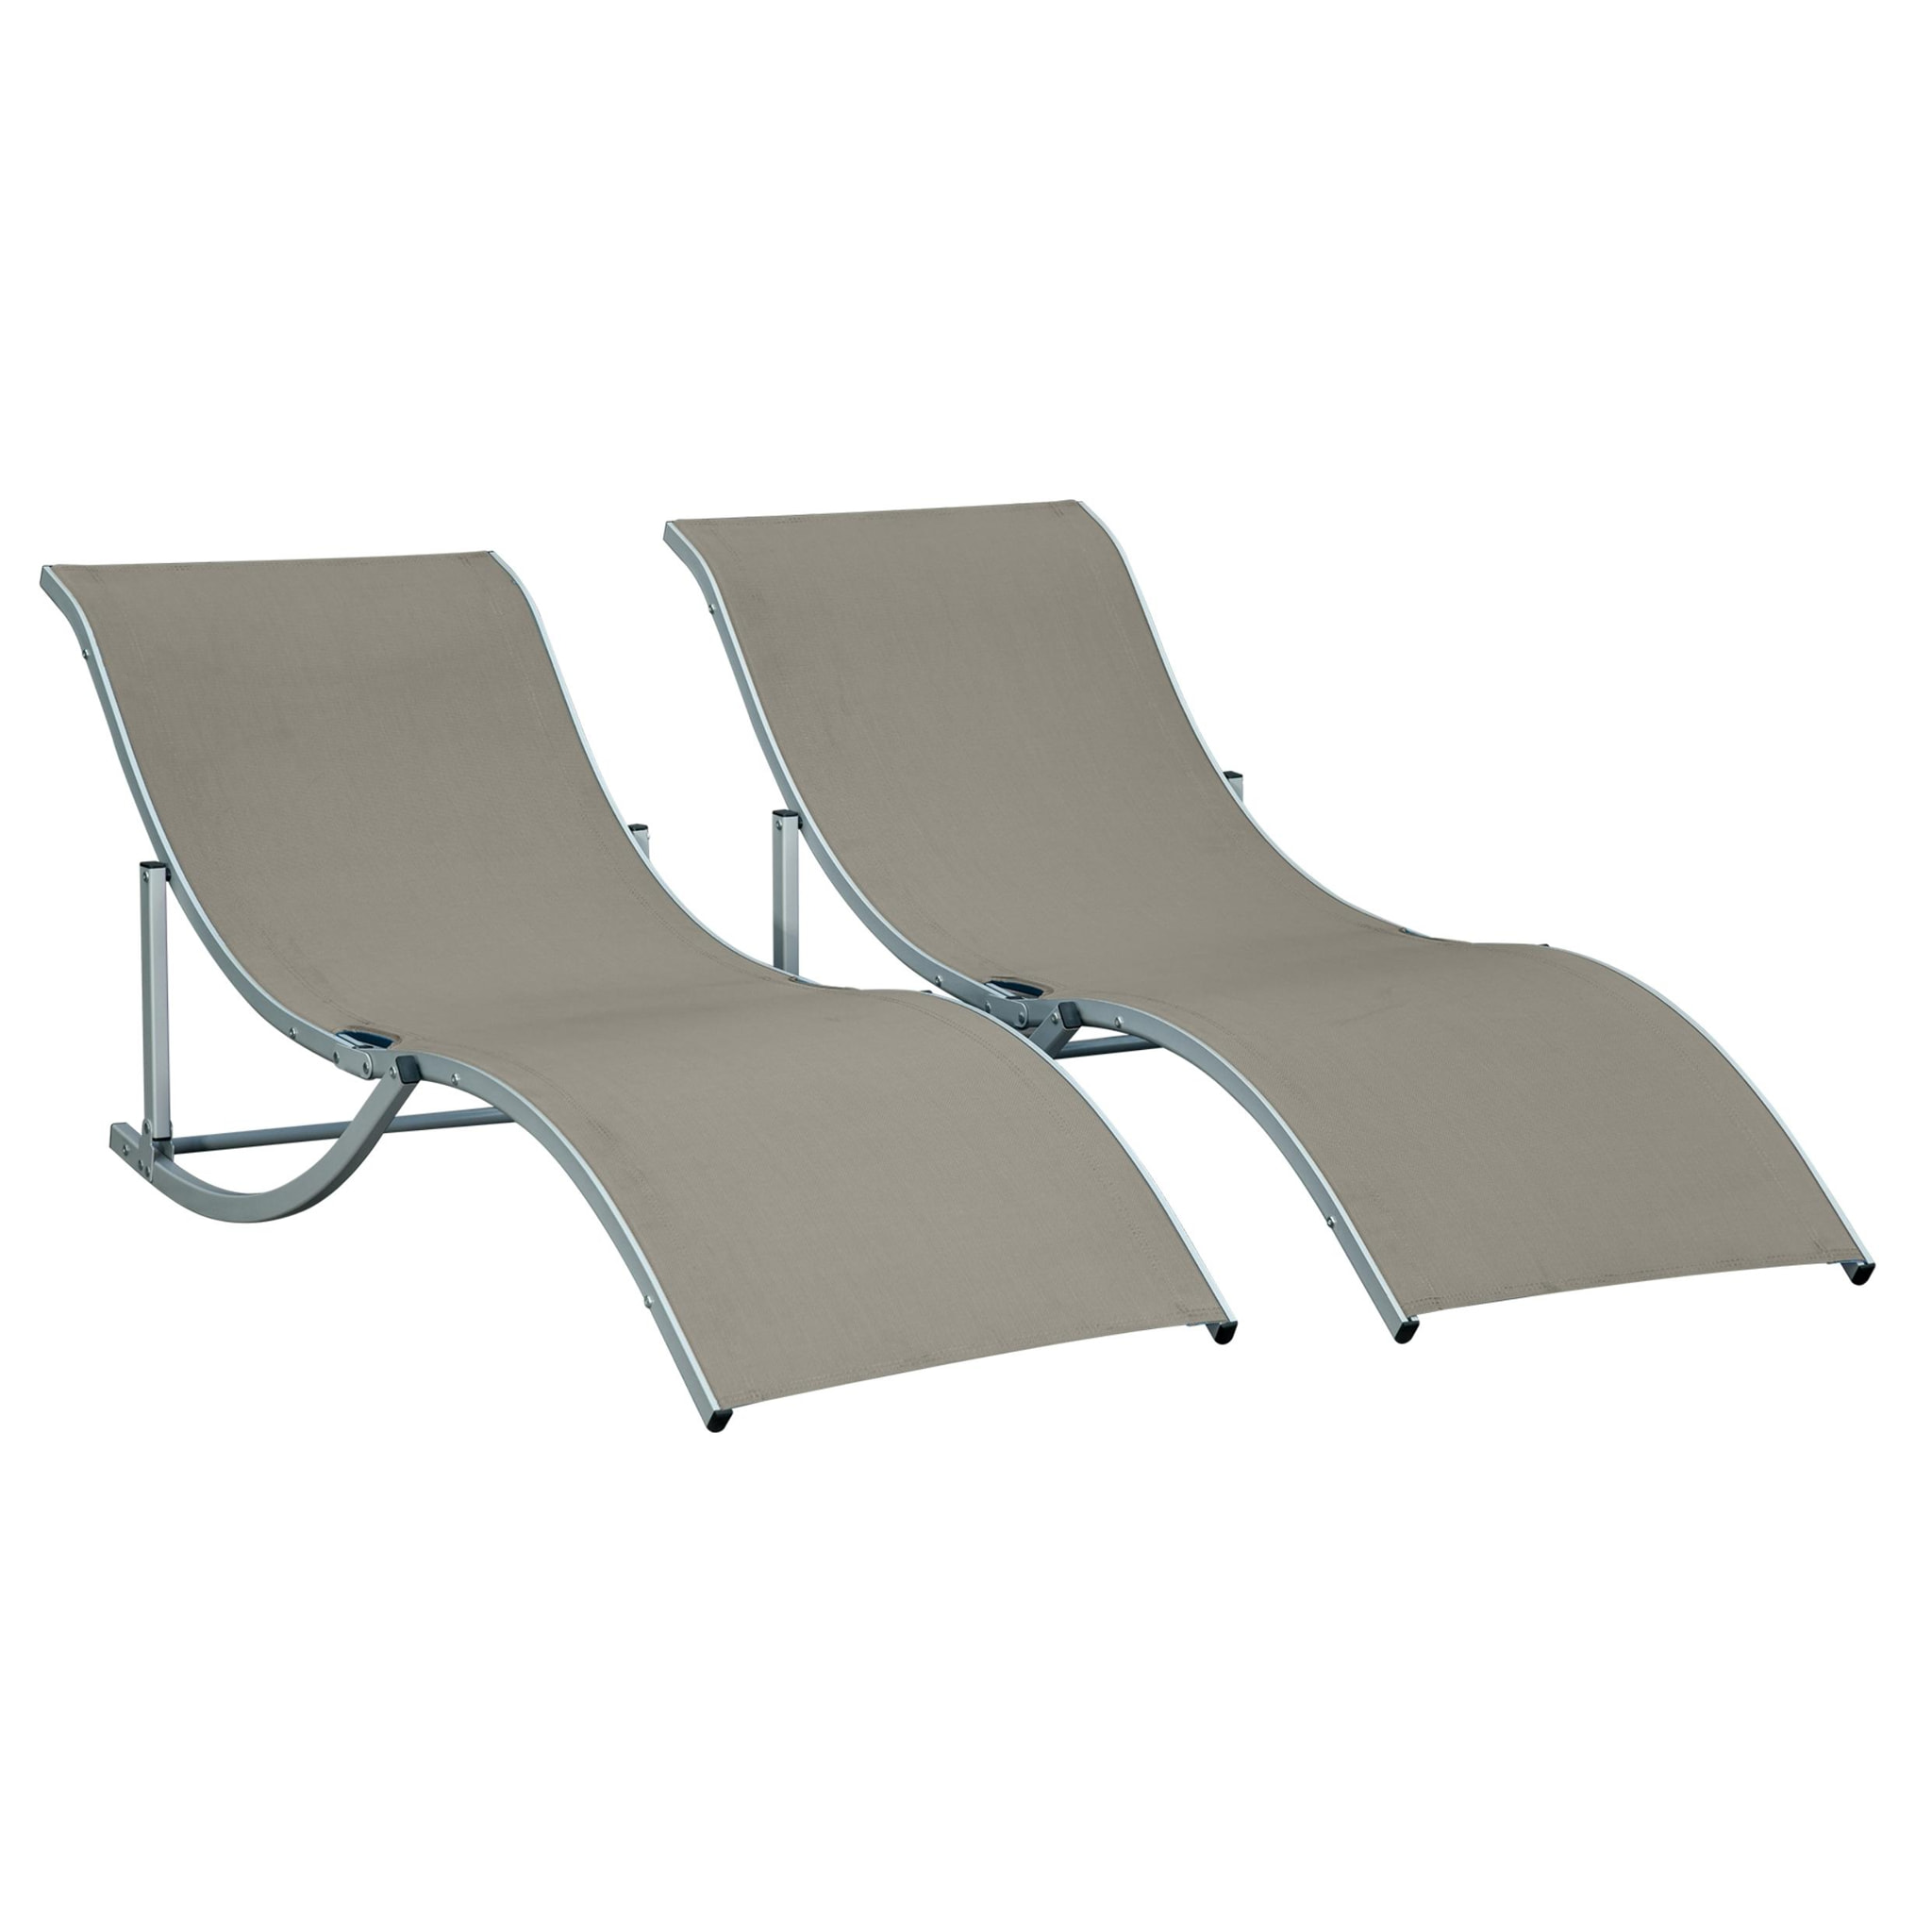 Lot de 2 bains de soleil pliables design contemporain - lot de 2 transats ergonomiques - alu. textilène gris clair